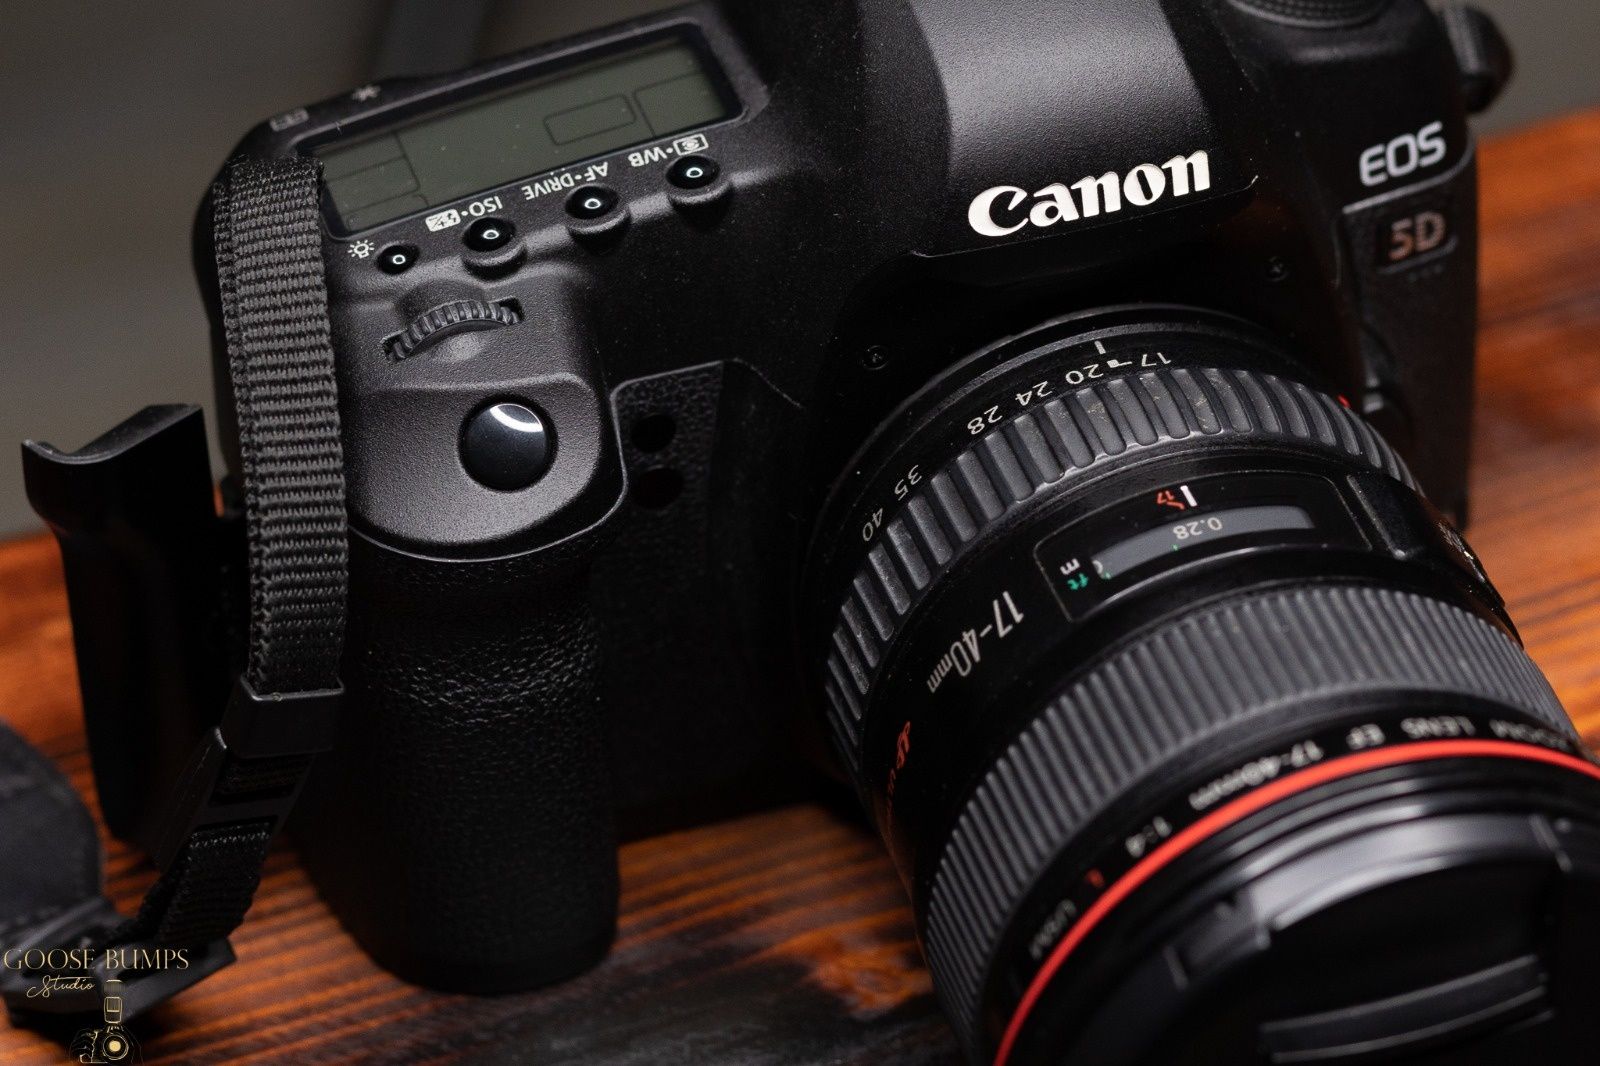 Canon Eos 5d Mark II(CANON EOS 5D MARK II)